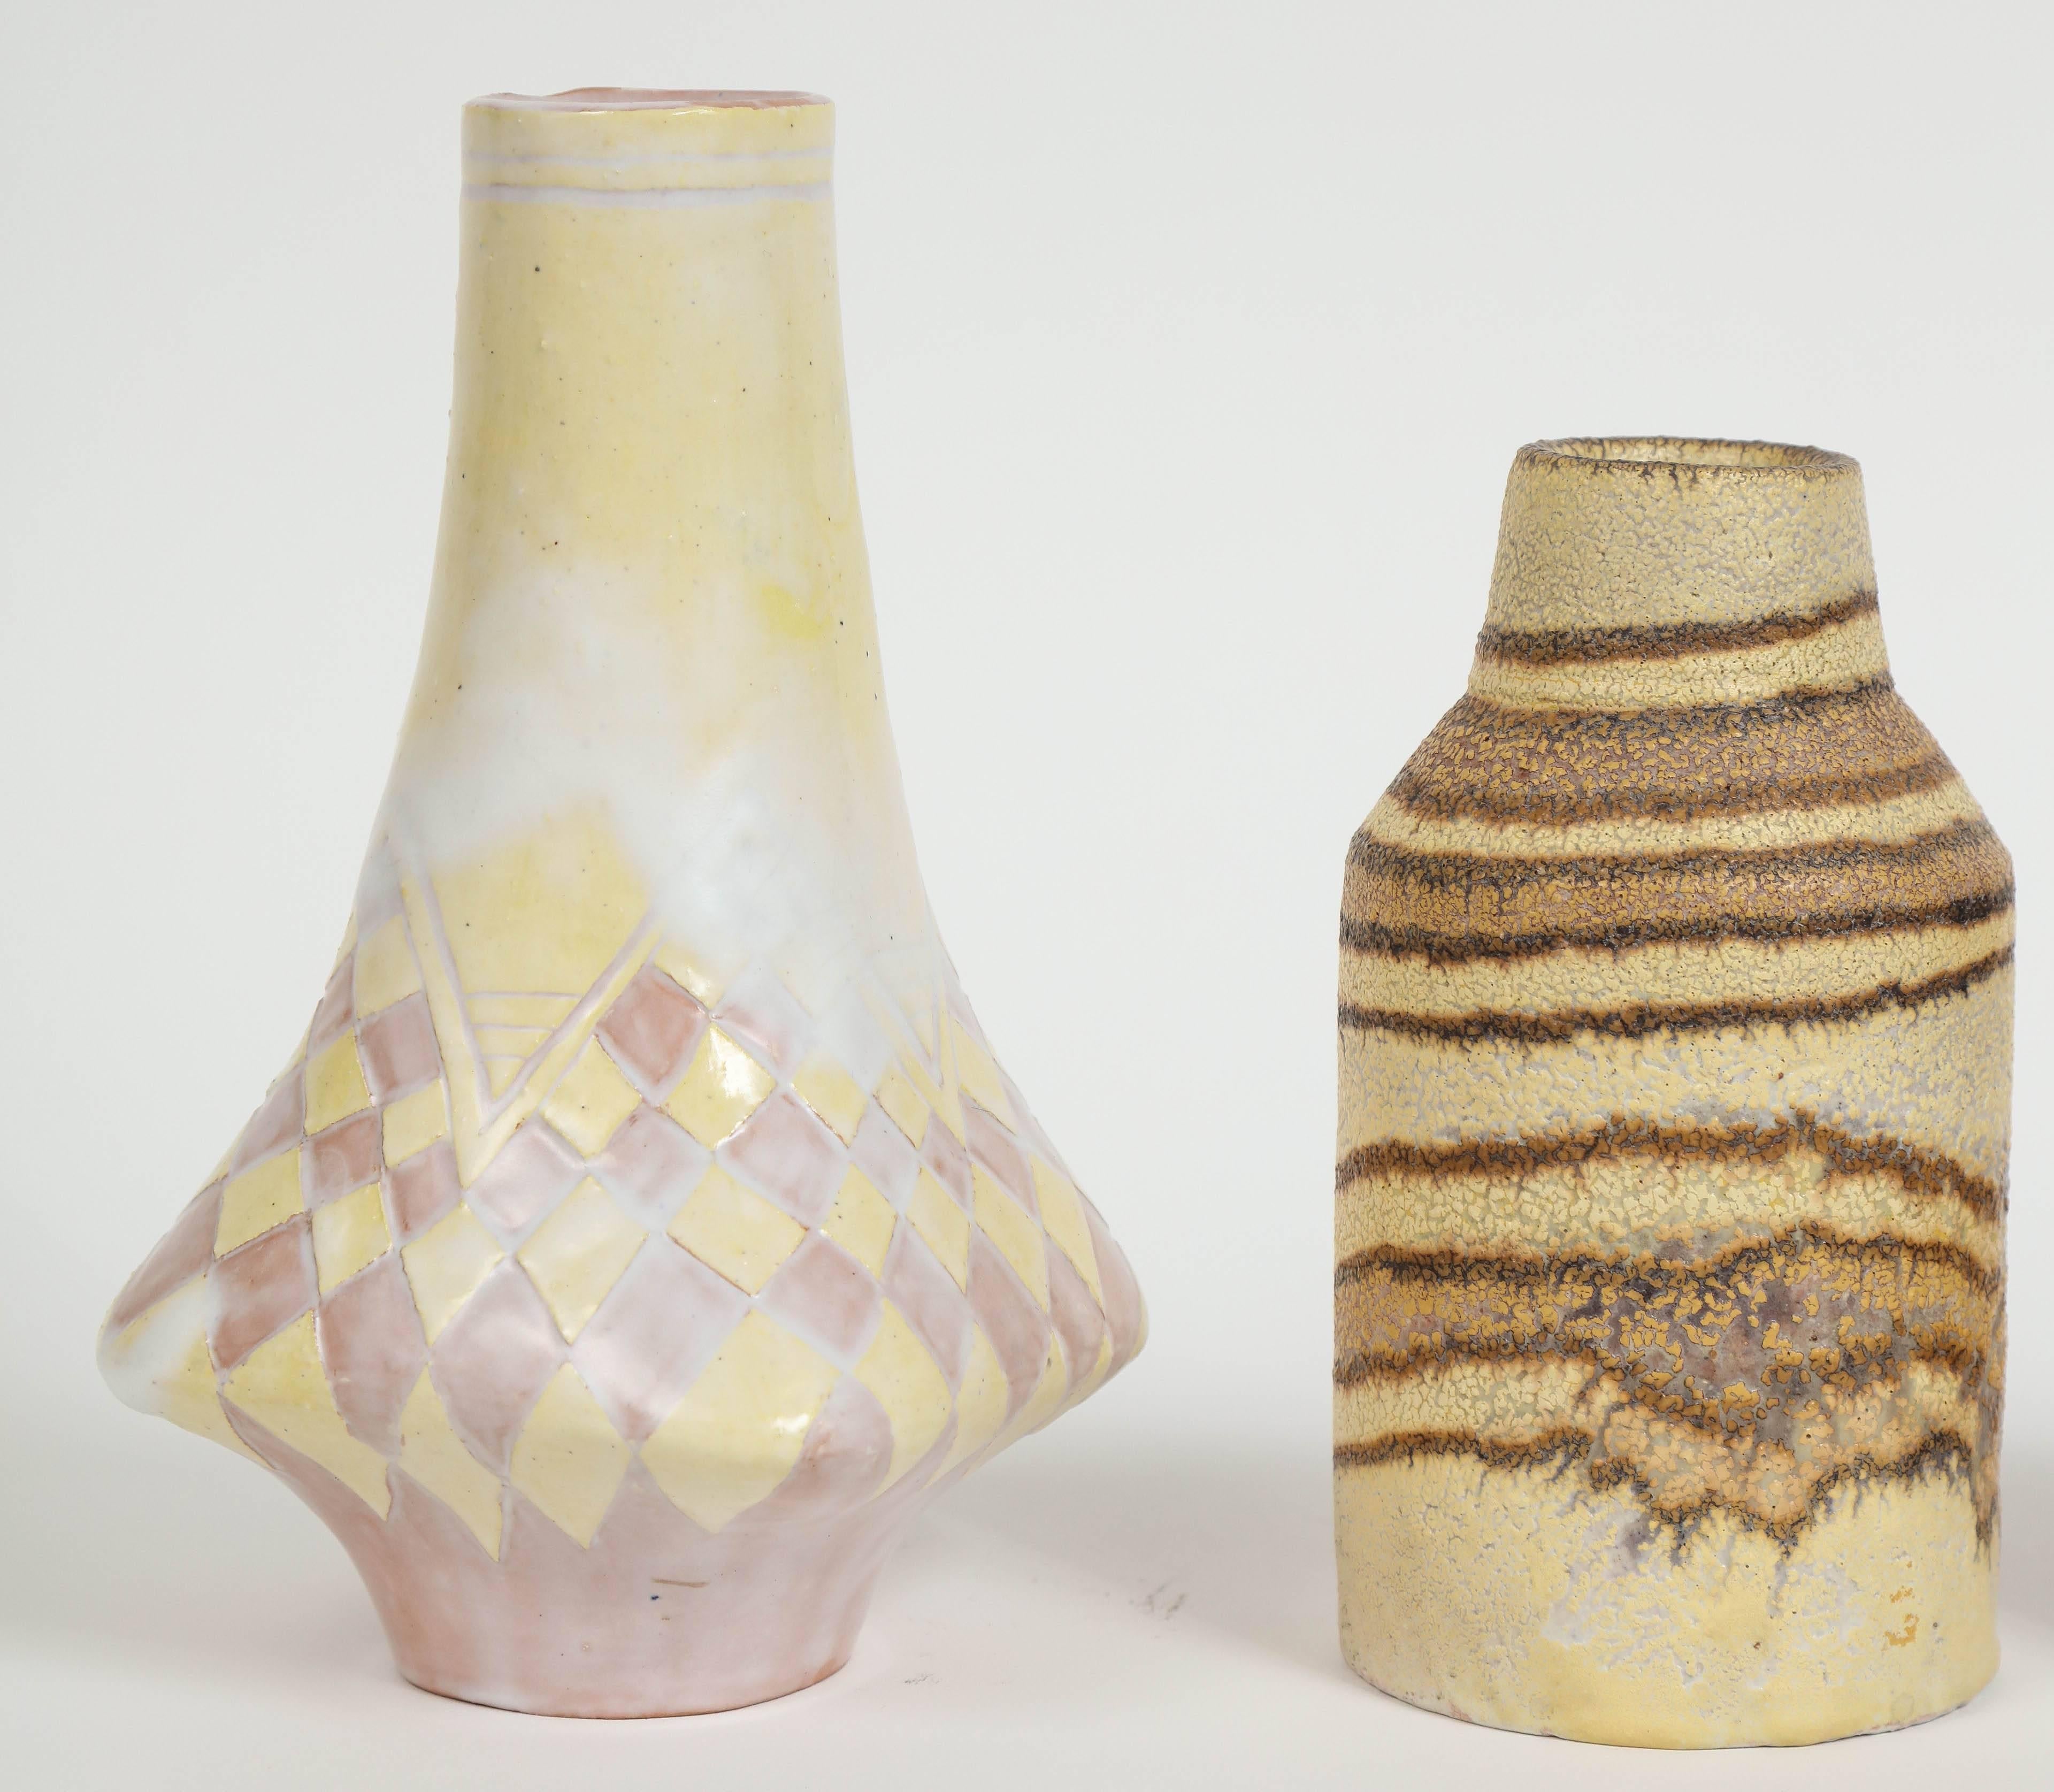 Italian Marcello Fantoni Small Ceramic Vases, circa 1960s - 1970s For Sale